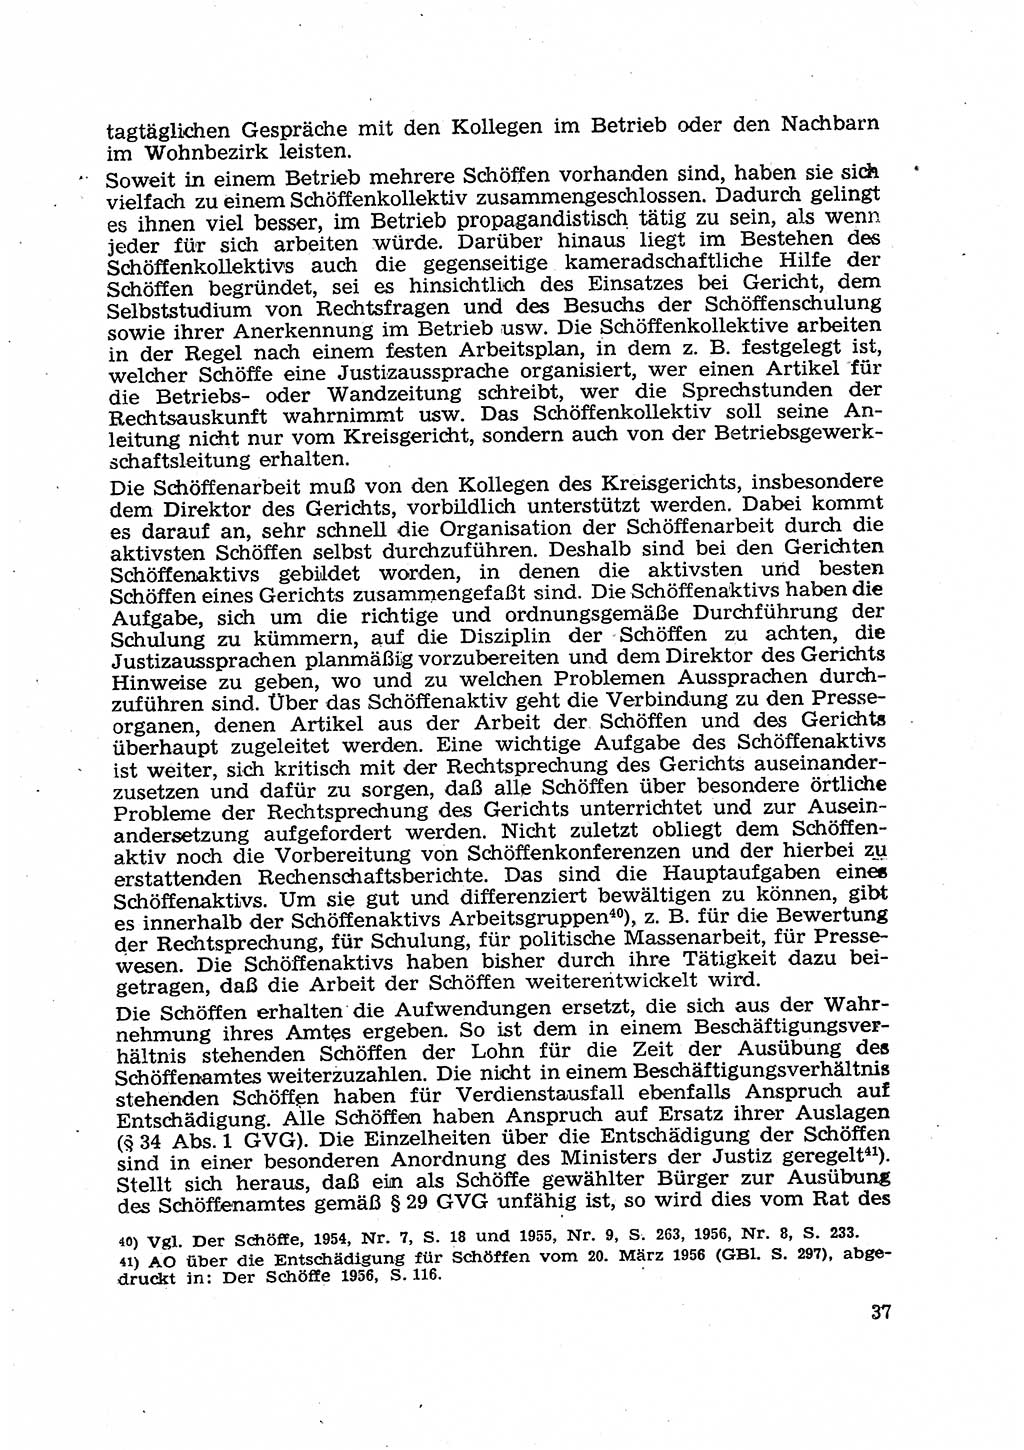 Gericht und Rechtsprechung in der Deutschen Demokratischen Republik (DDR) 1956, Seite 37 (Ger. Rechtspr. DDR 1956, S. 37)